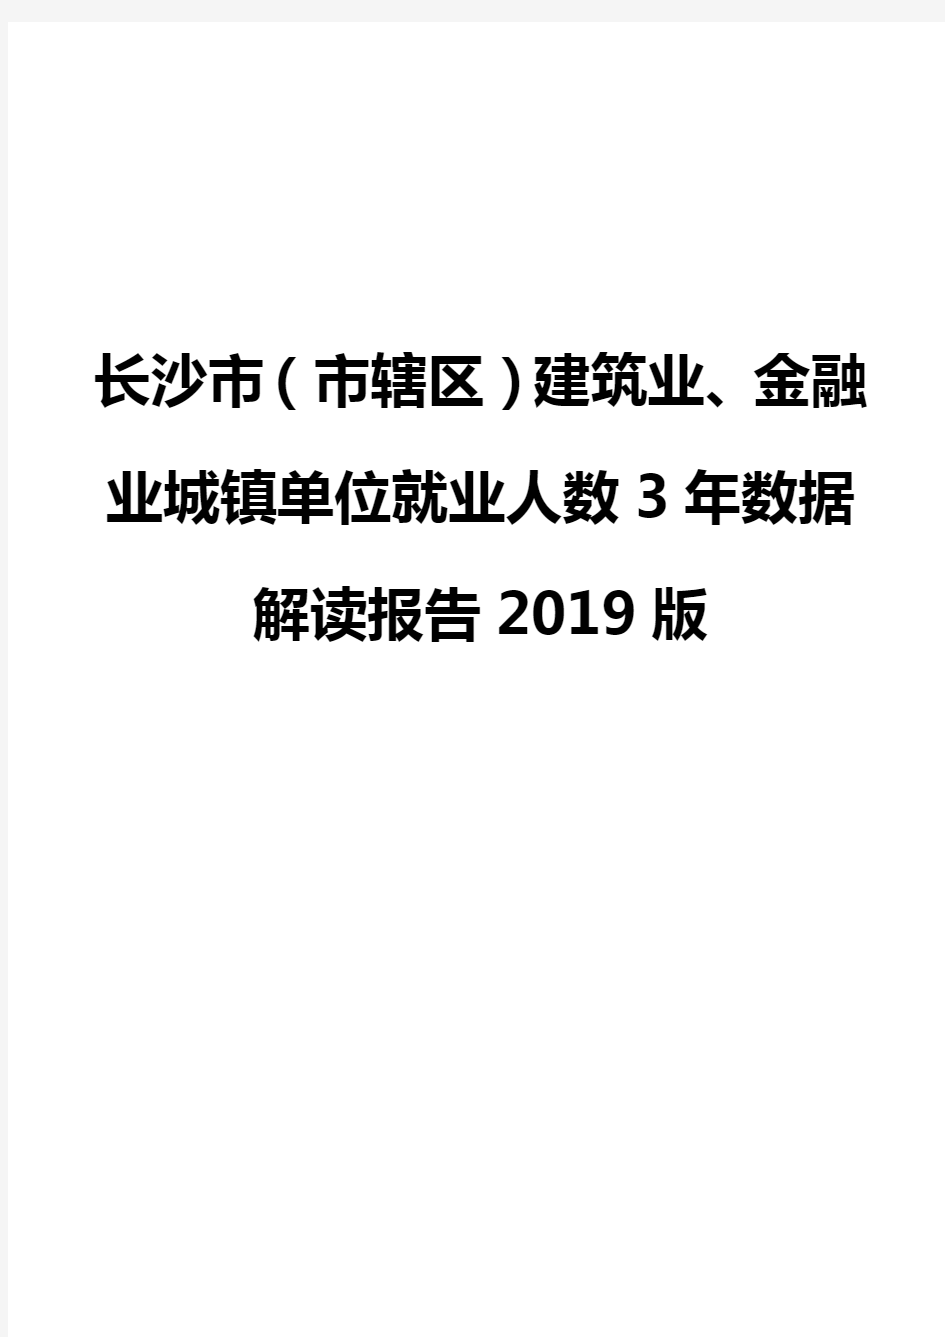 长沙市(市辖区)建筑业、金融业城镇单位就业人数3年数据解读报告2019版